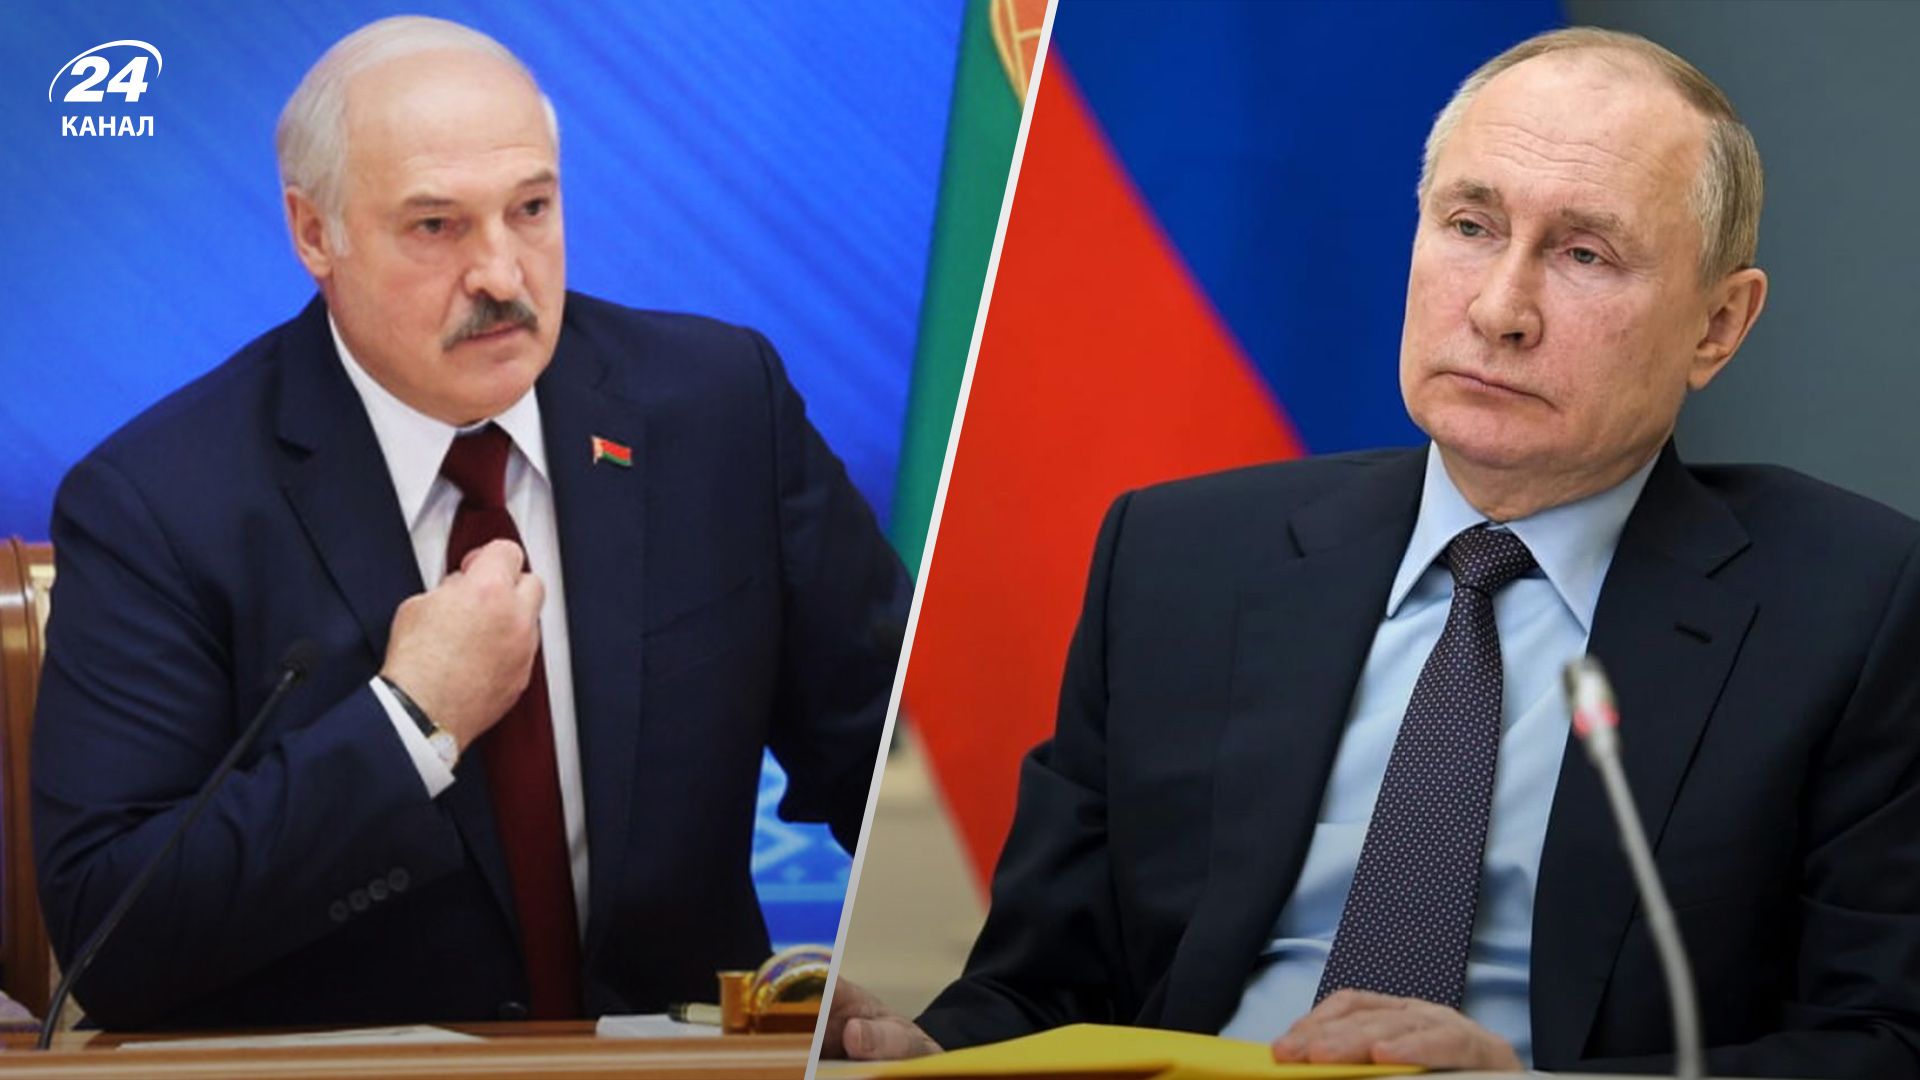 В Беларусь зовут войну, - Давидюк о плане Путина, относительно Лукашенко - 24 Канал